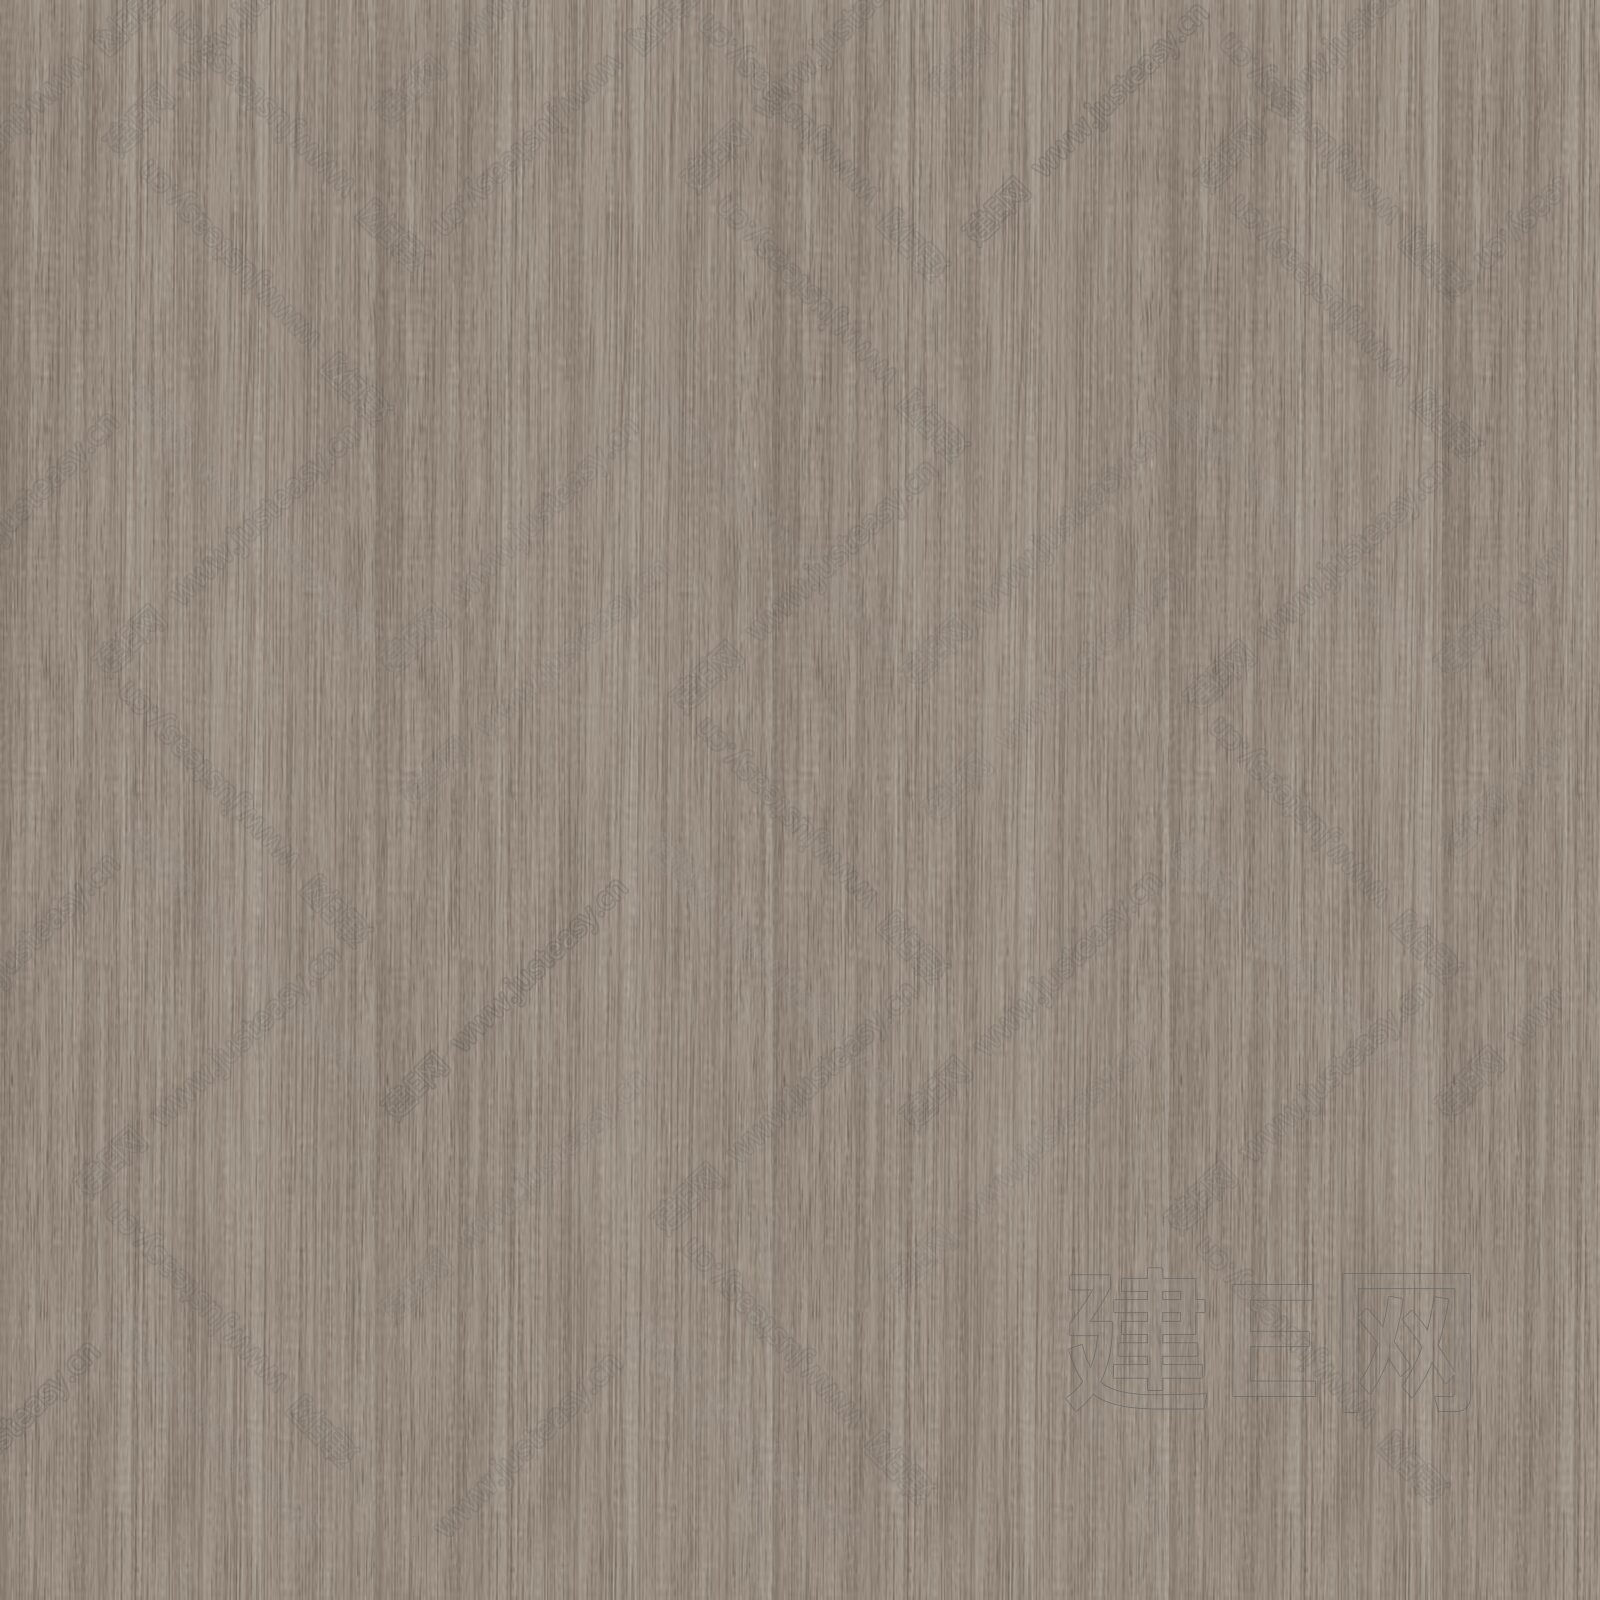 褐色木纹木饰面木板贴图3d贴图下载